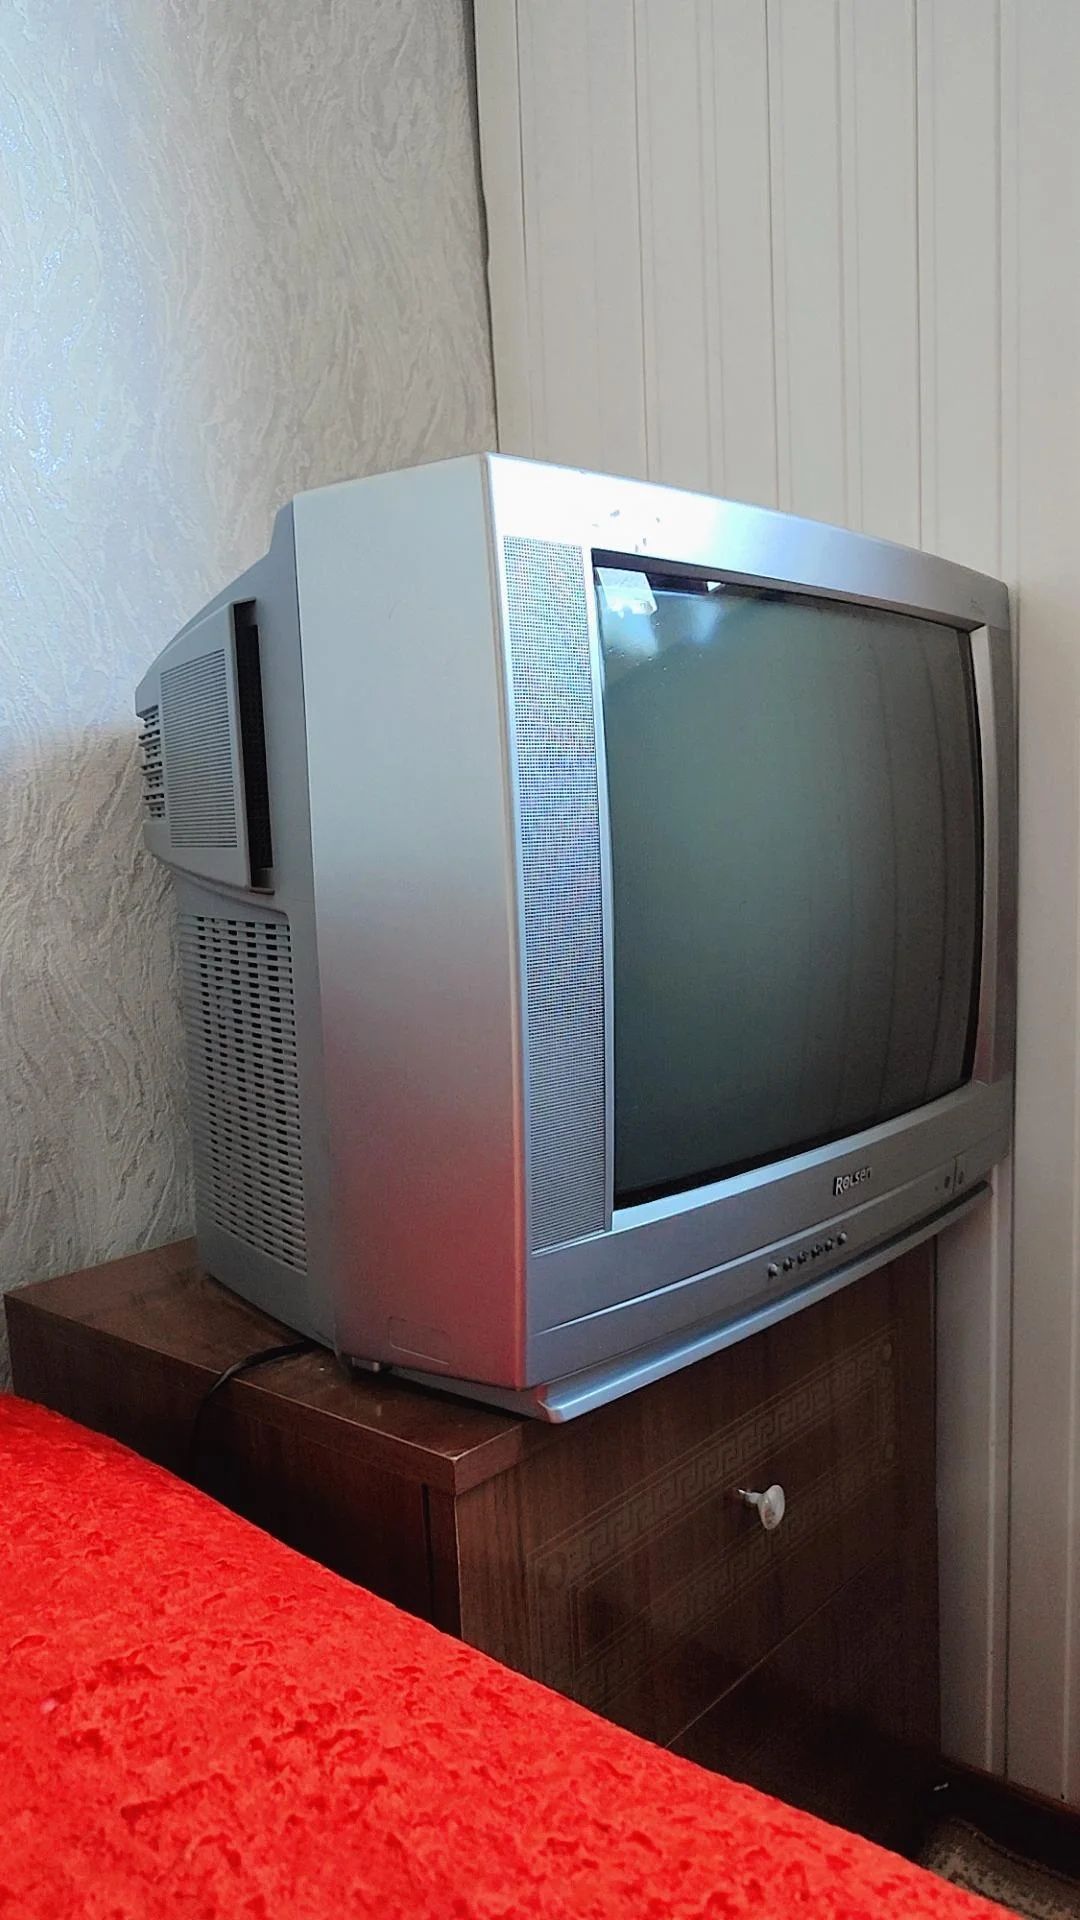 Телевизор Rolsen с подставкой